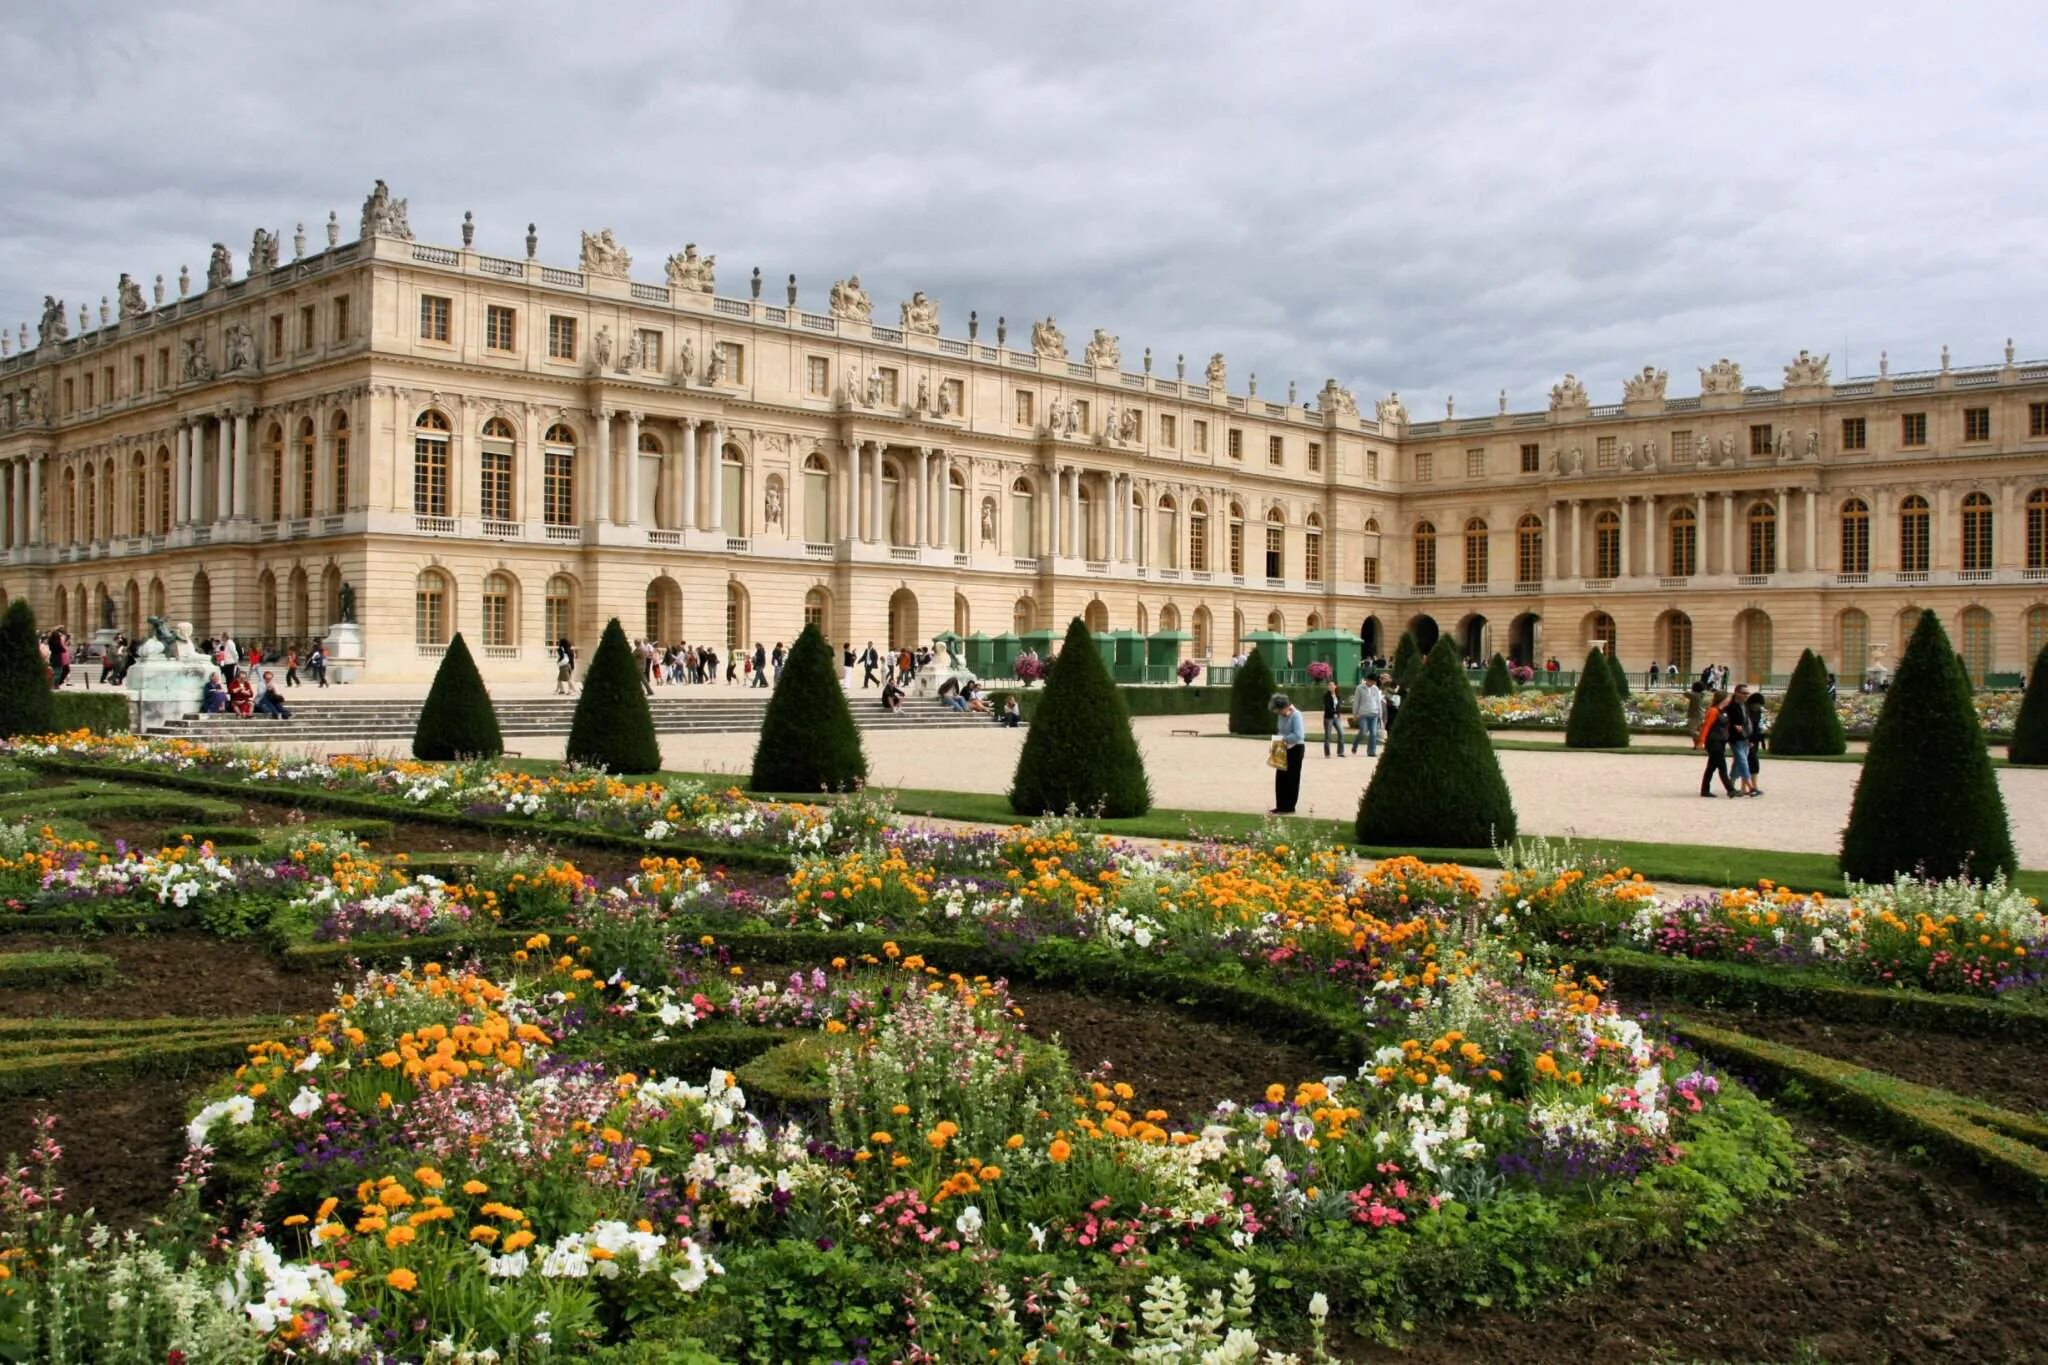 Королевский версаль. Версальский дворец Версаль Франция. Версаль дворцово-парковый ансамбль во Франции. Королевский дворец в Версале. Королевская резиденция Версаль.